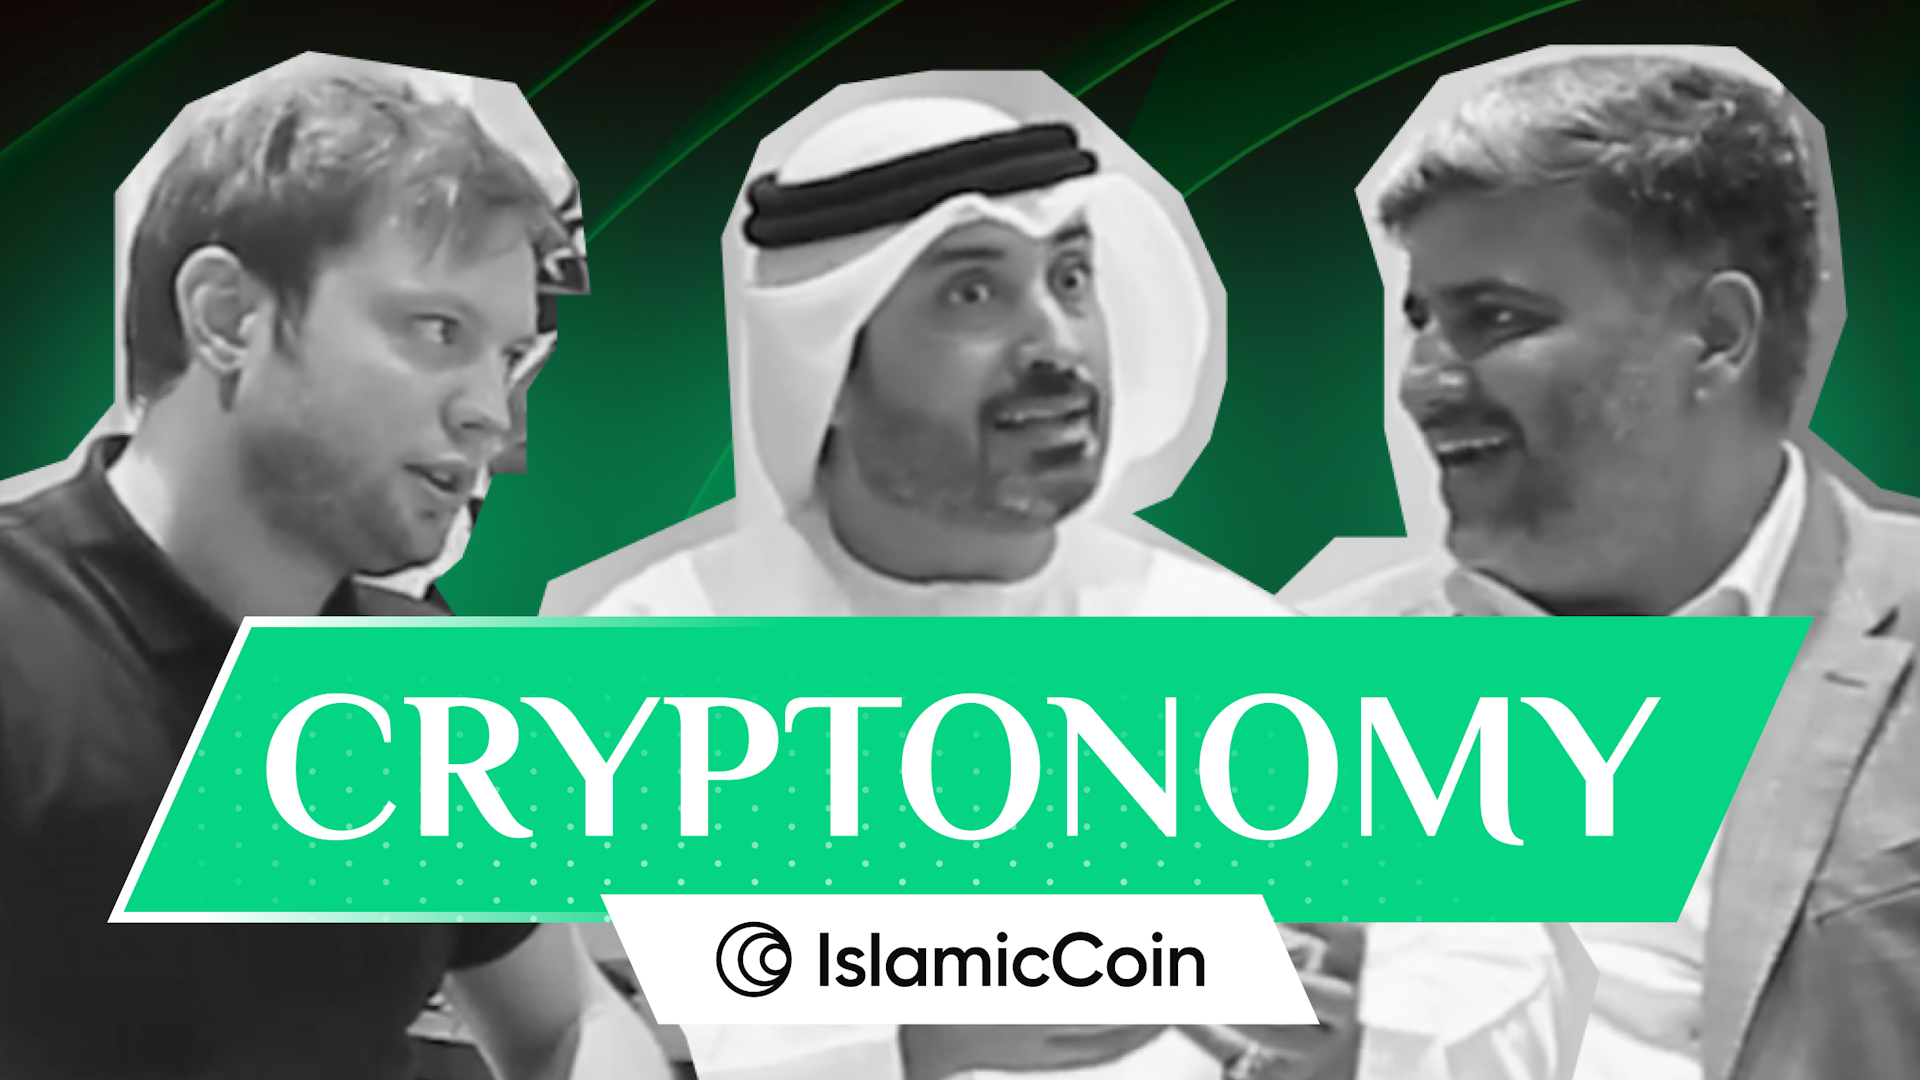 Cryptonomy Talks with Islamic Coin